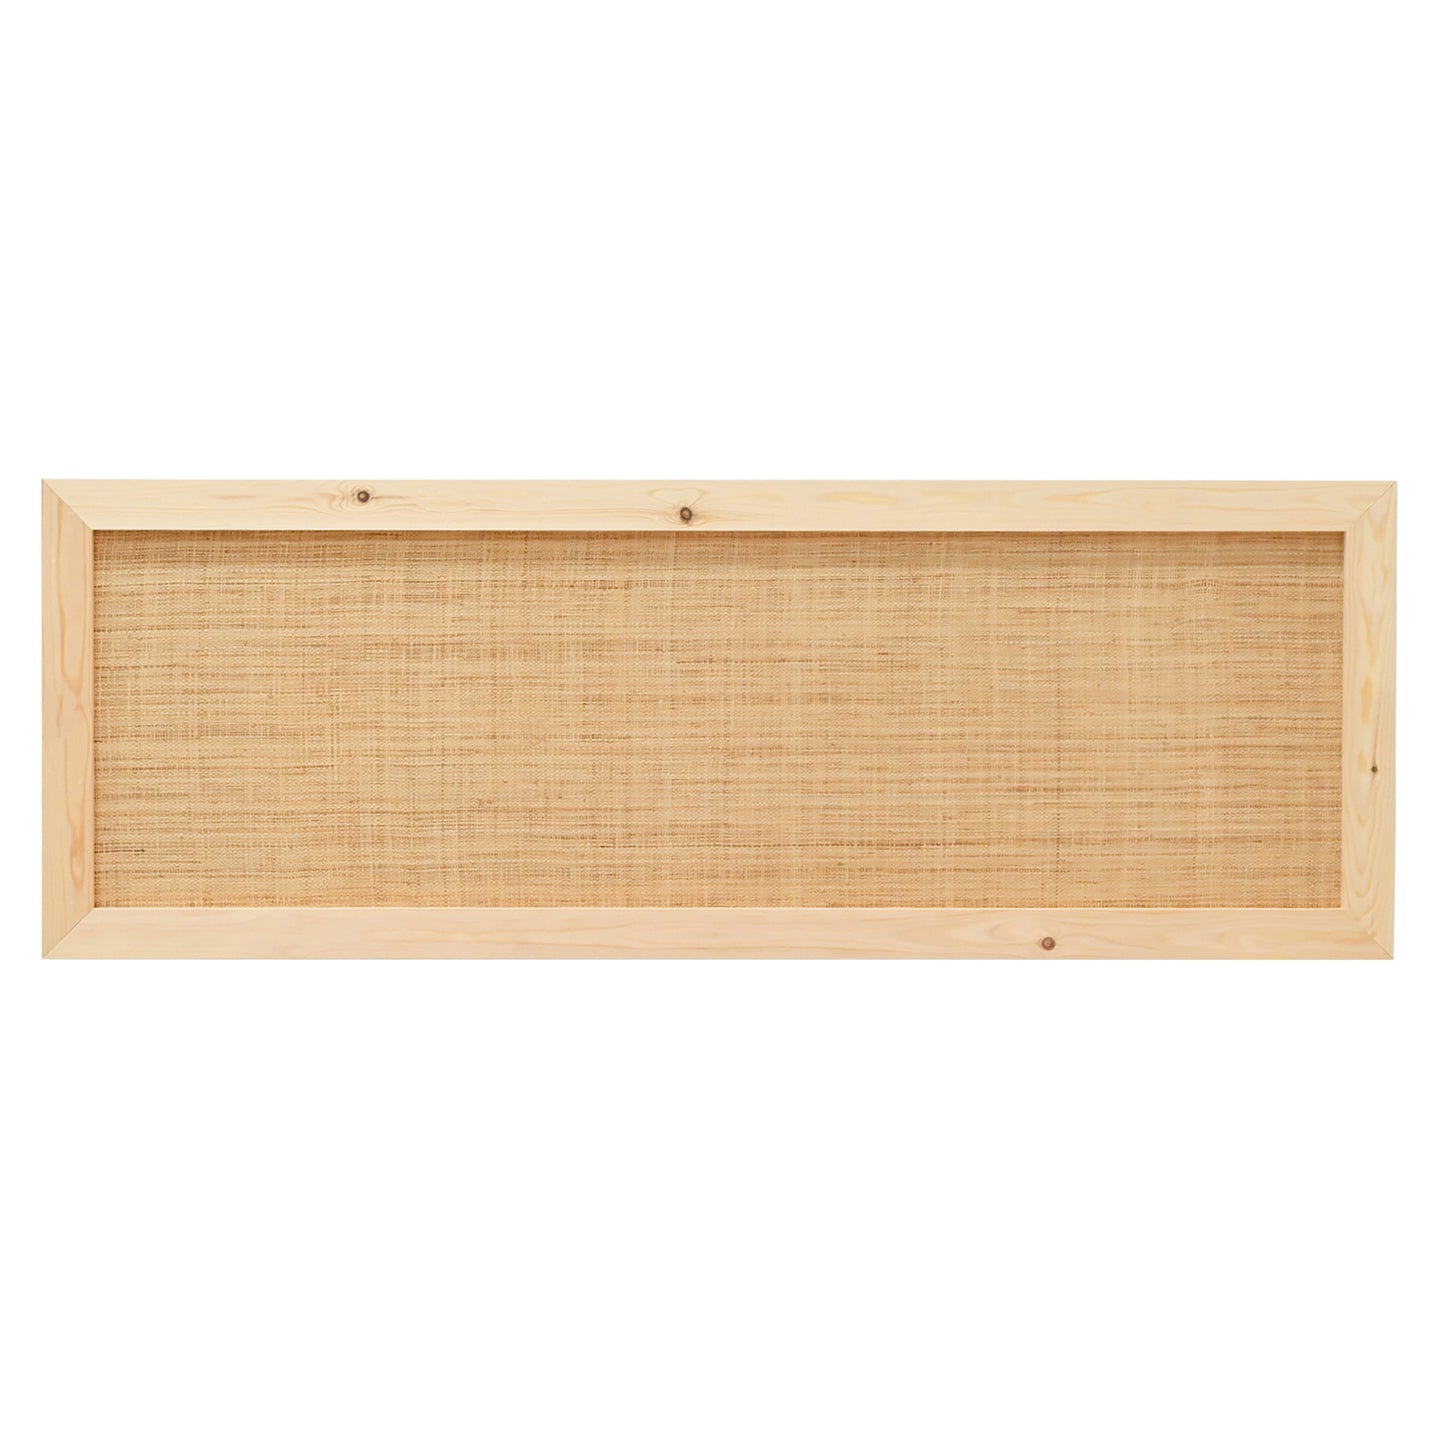 Cabecero de madera maciza y rafia en tono natural de 100x60cm - DECOWOOD